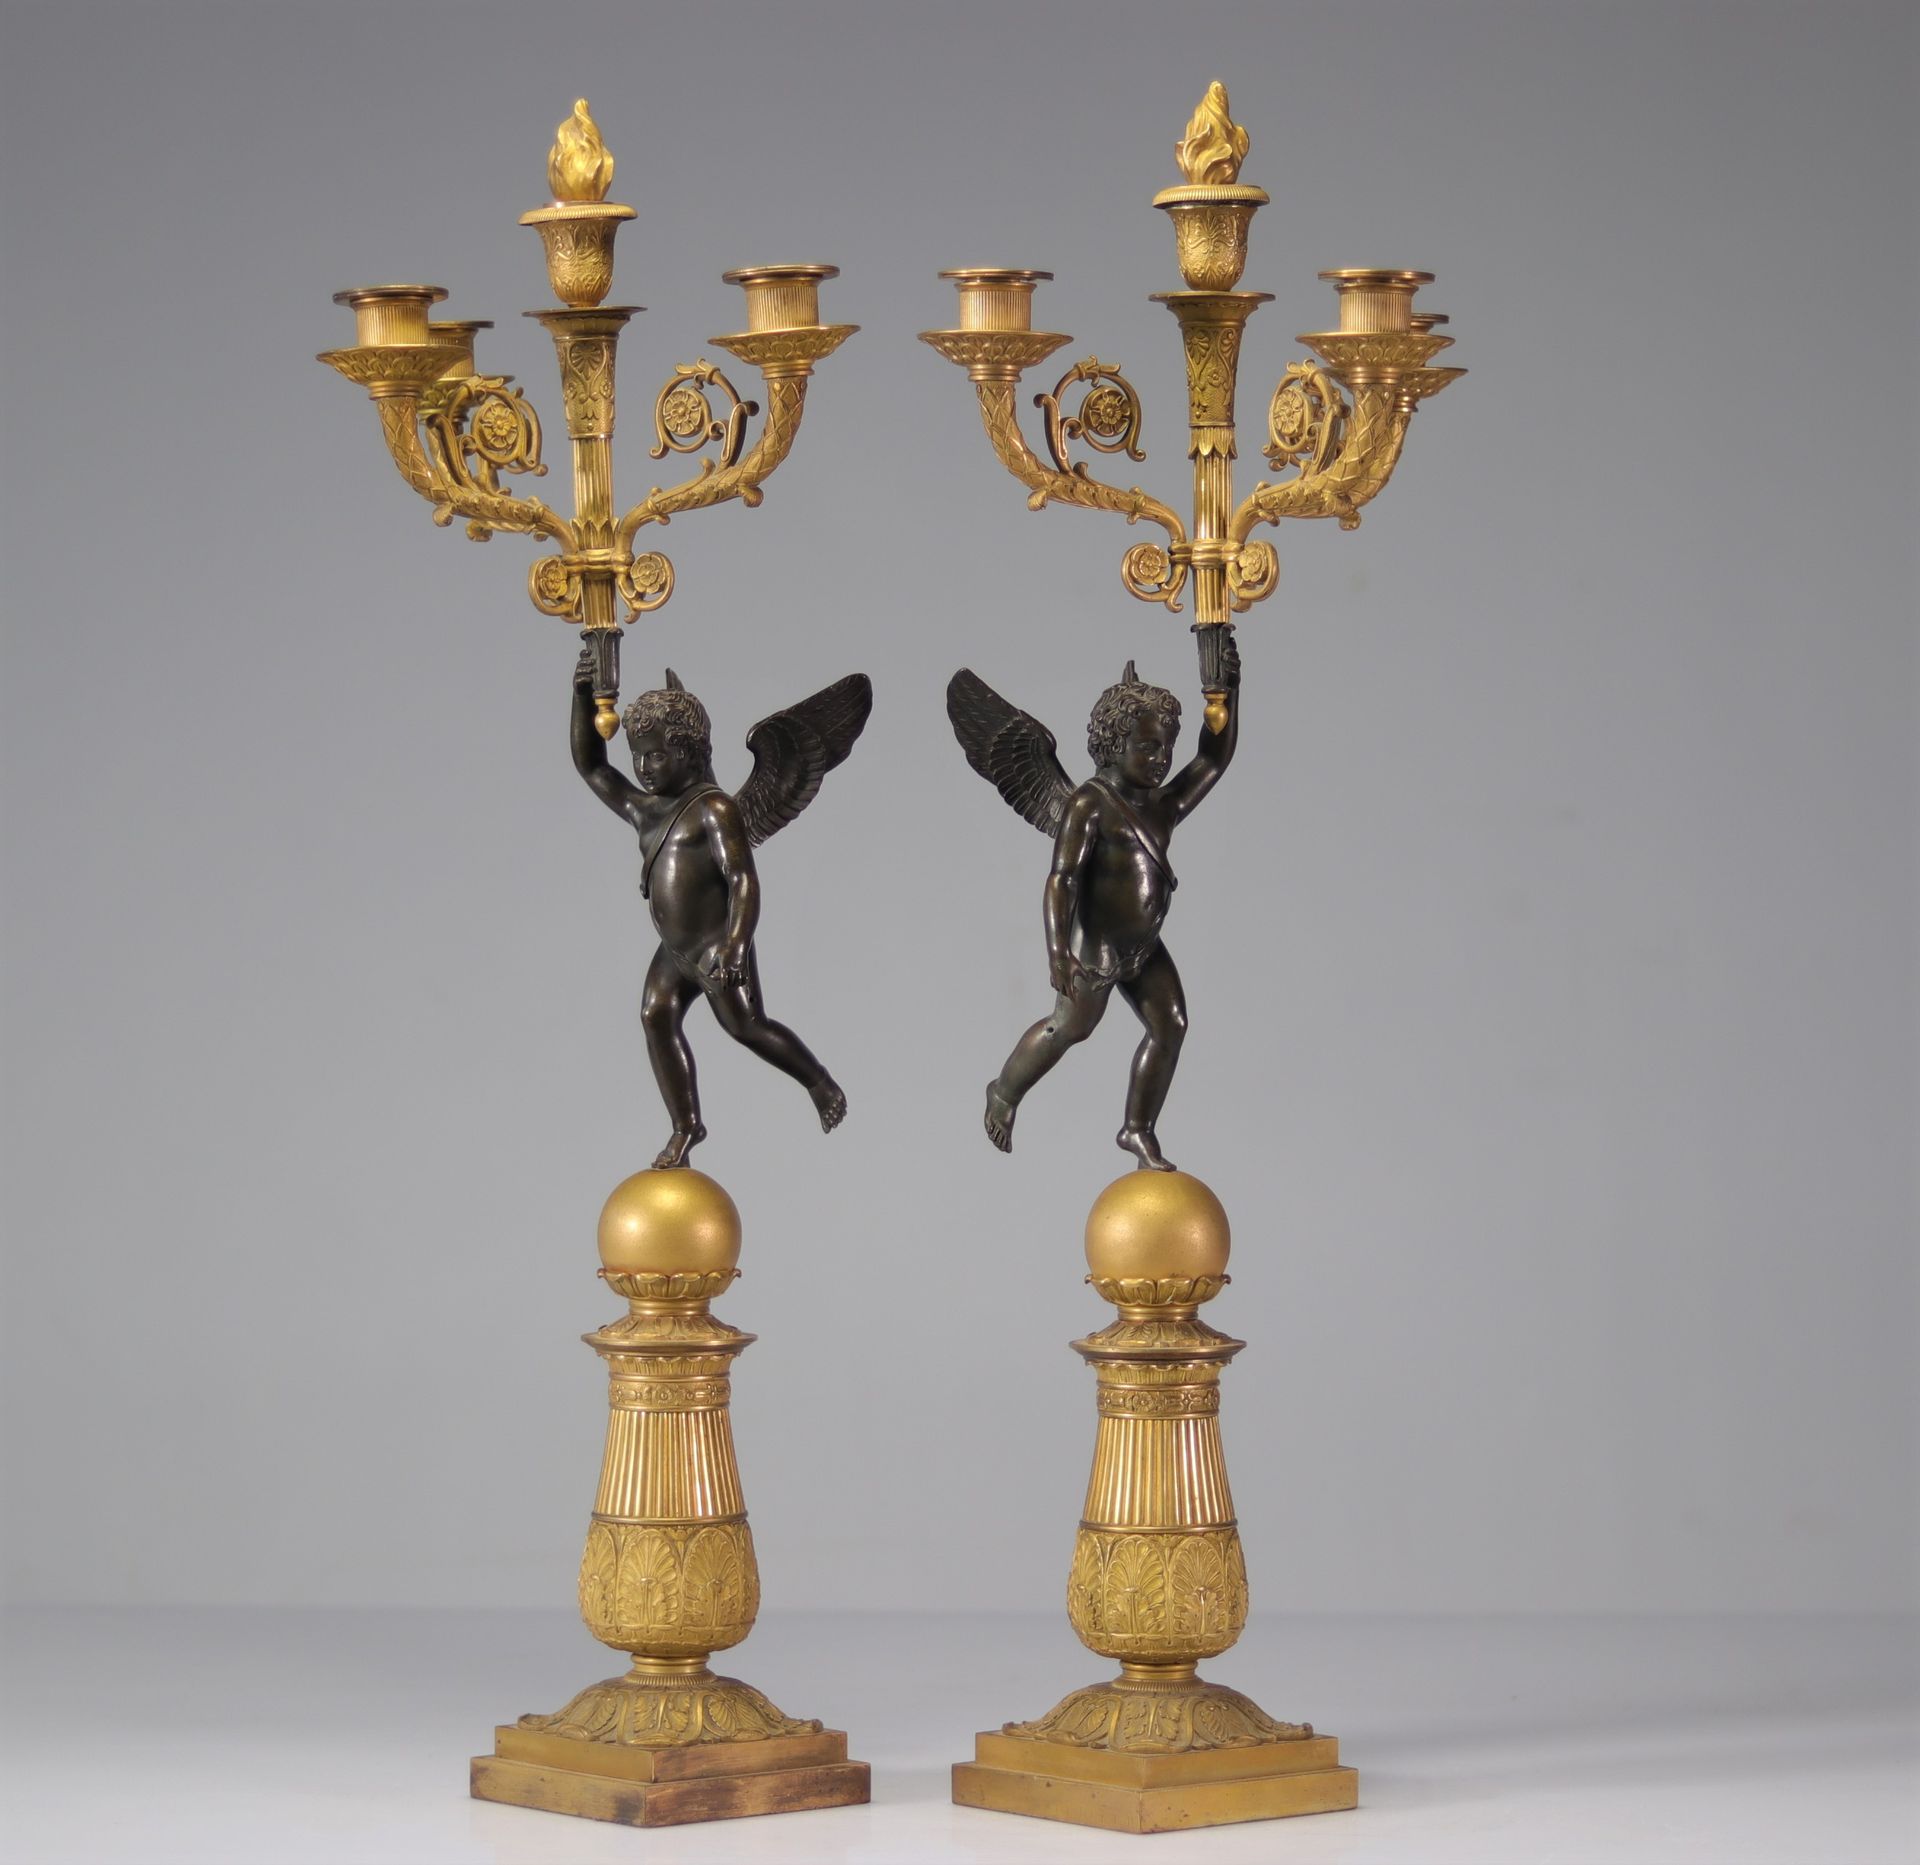 Null 一对帝国时期的带天使的青铜烛台，有两个铜锈
重量：7.50公斤
交货时间不详
地区：法国
尺寸: 高670宽250
状况: 乍看之下：状况很好